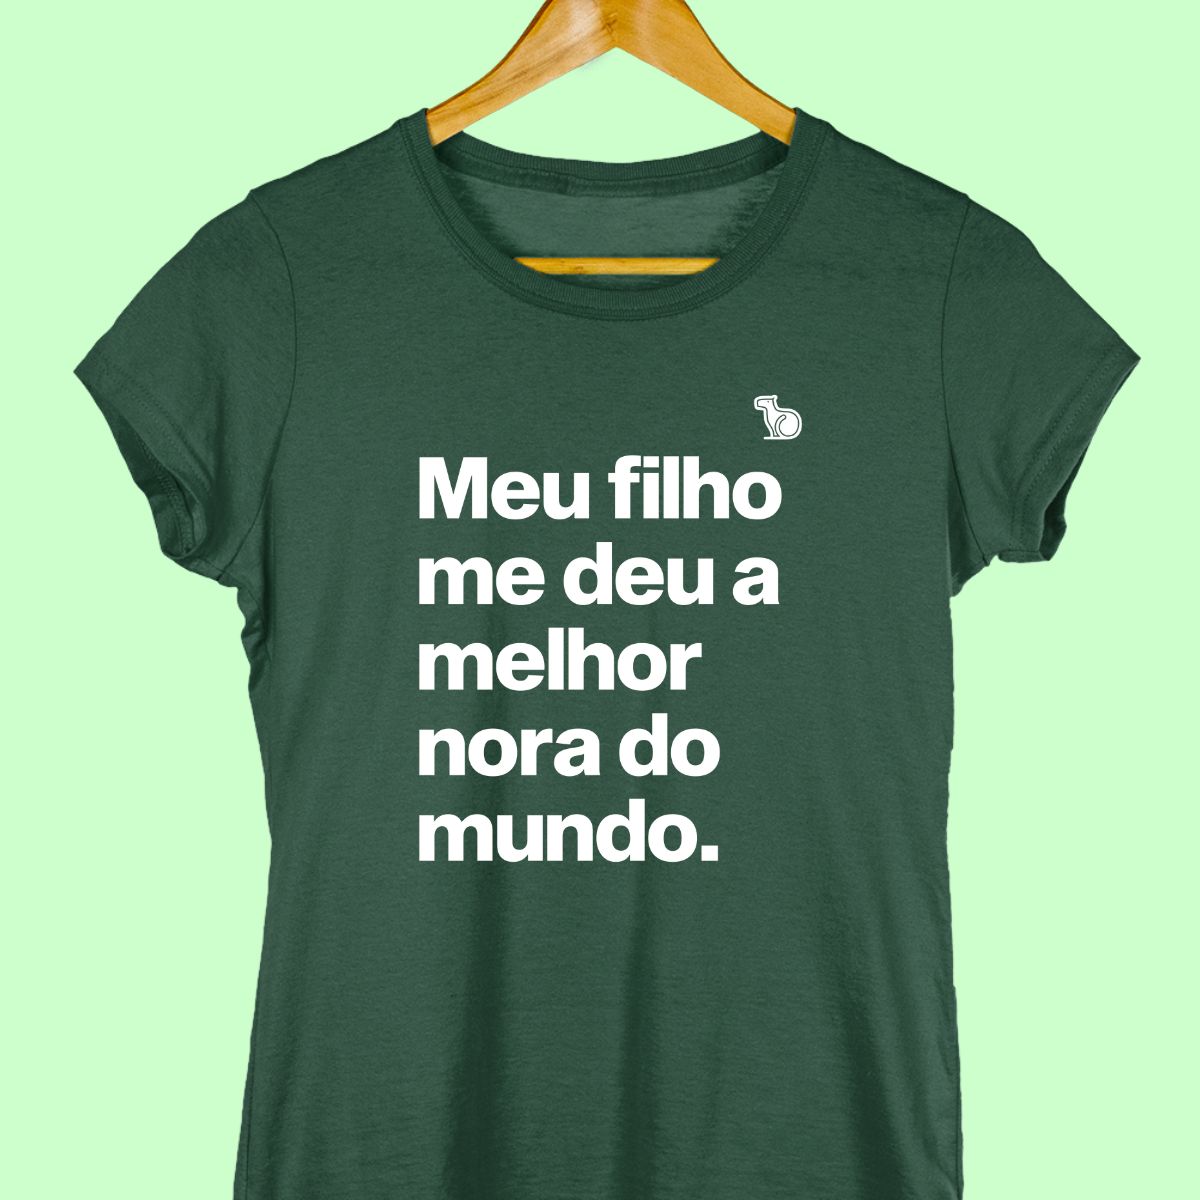 Camiseta com a frase "Meu filho me deu a melhor nora do mundo." feminina verde.